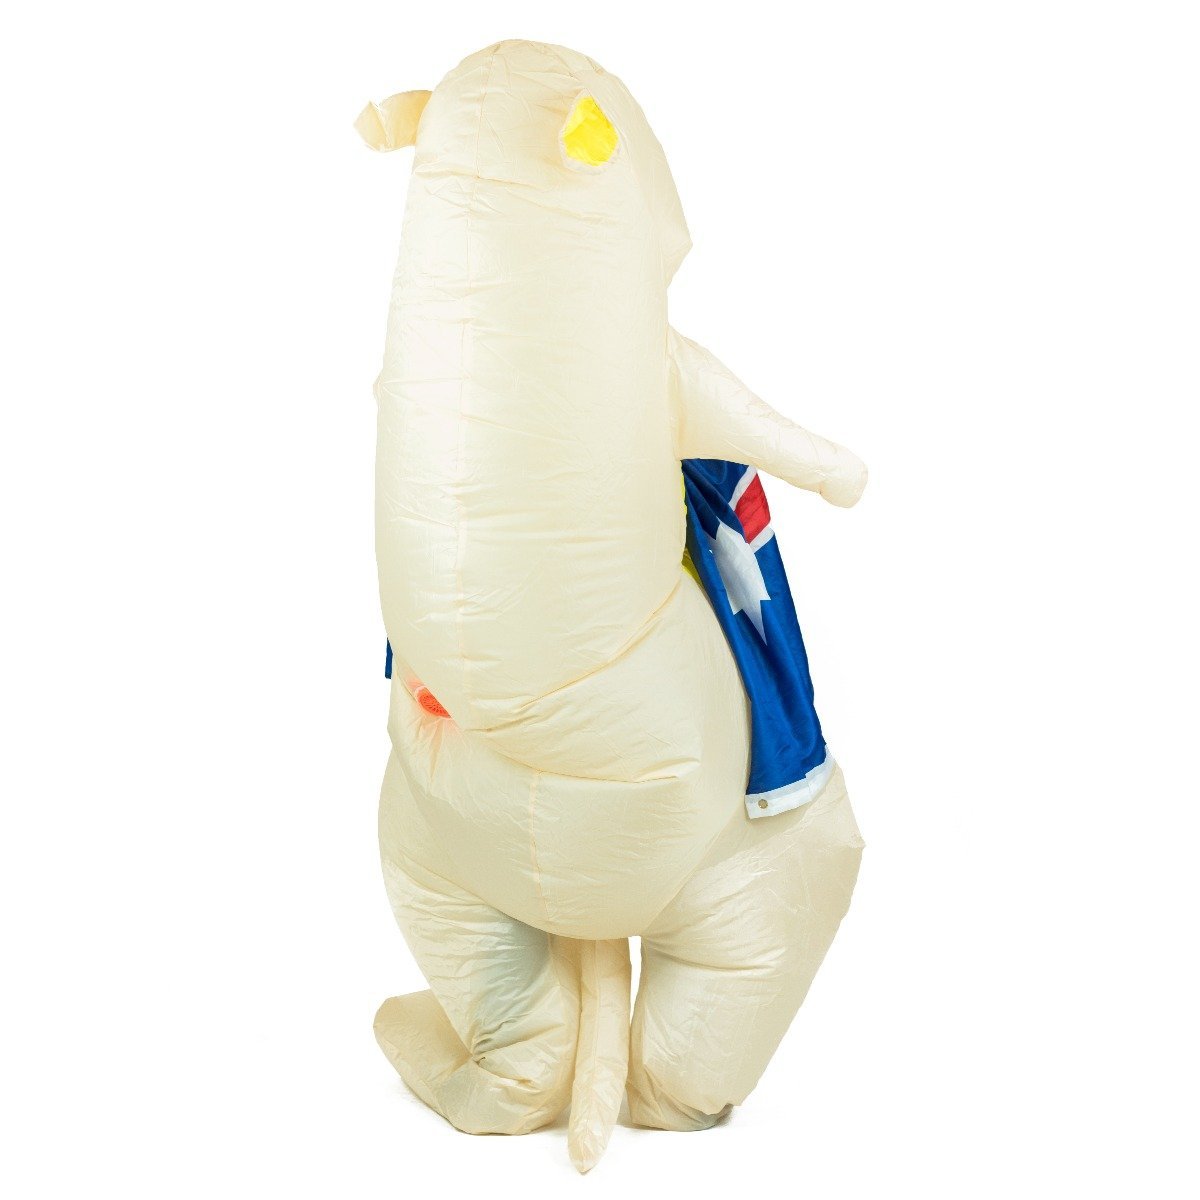 Bodysocks - Inflatable Kangaroo Costume